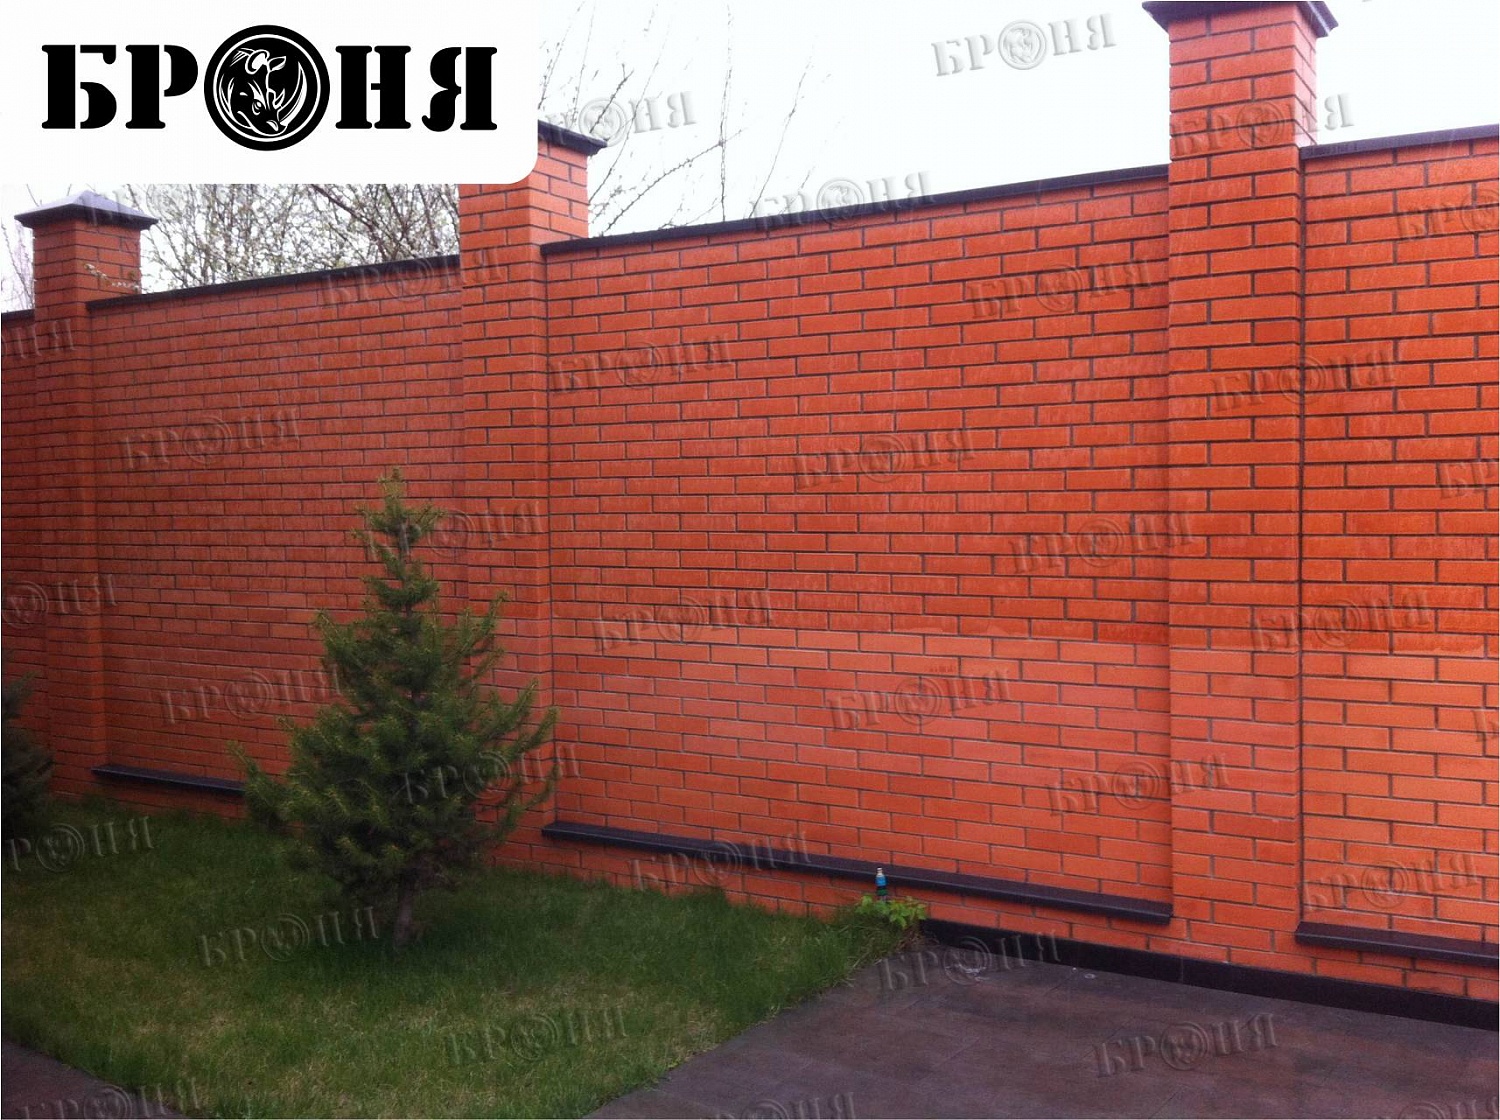 Волгоград, Броня Гидрофобизатор - стены и кирпичный забор частного дома